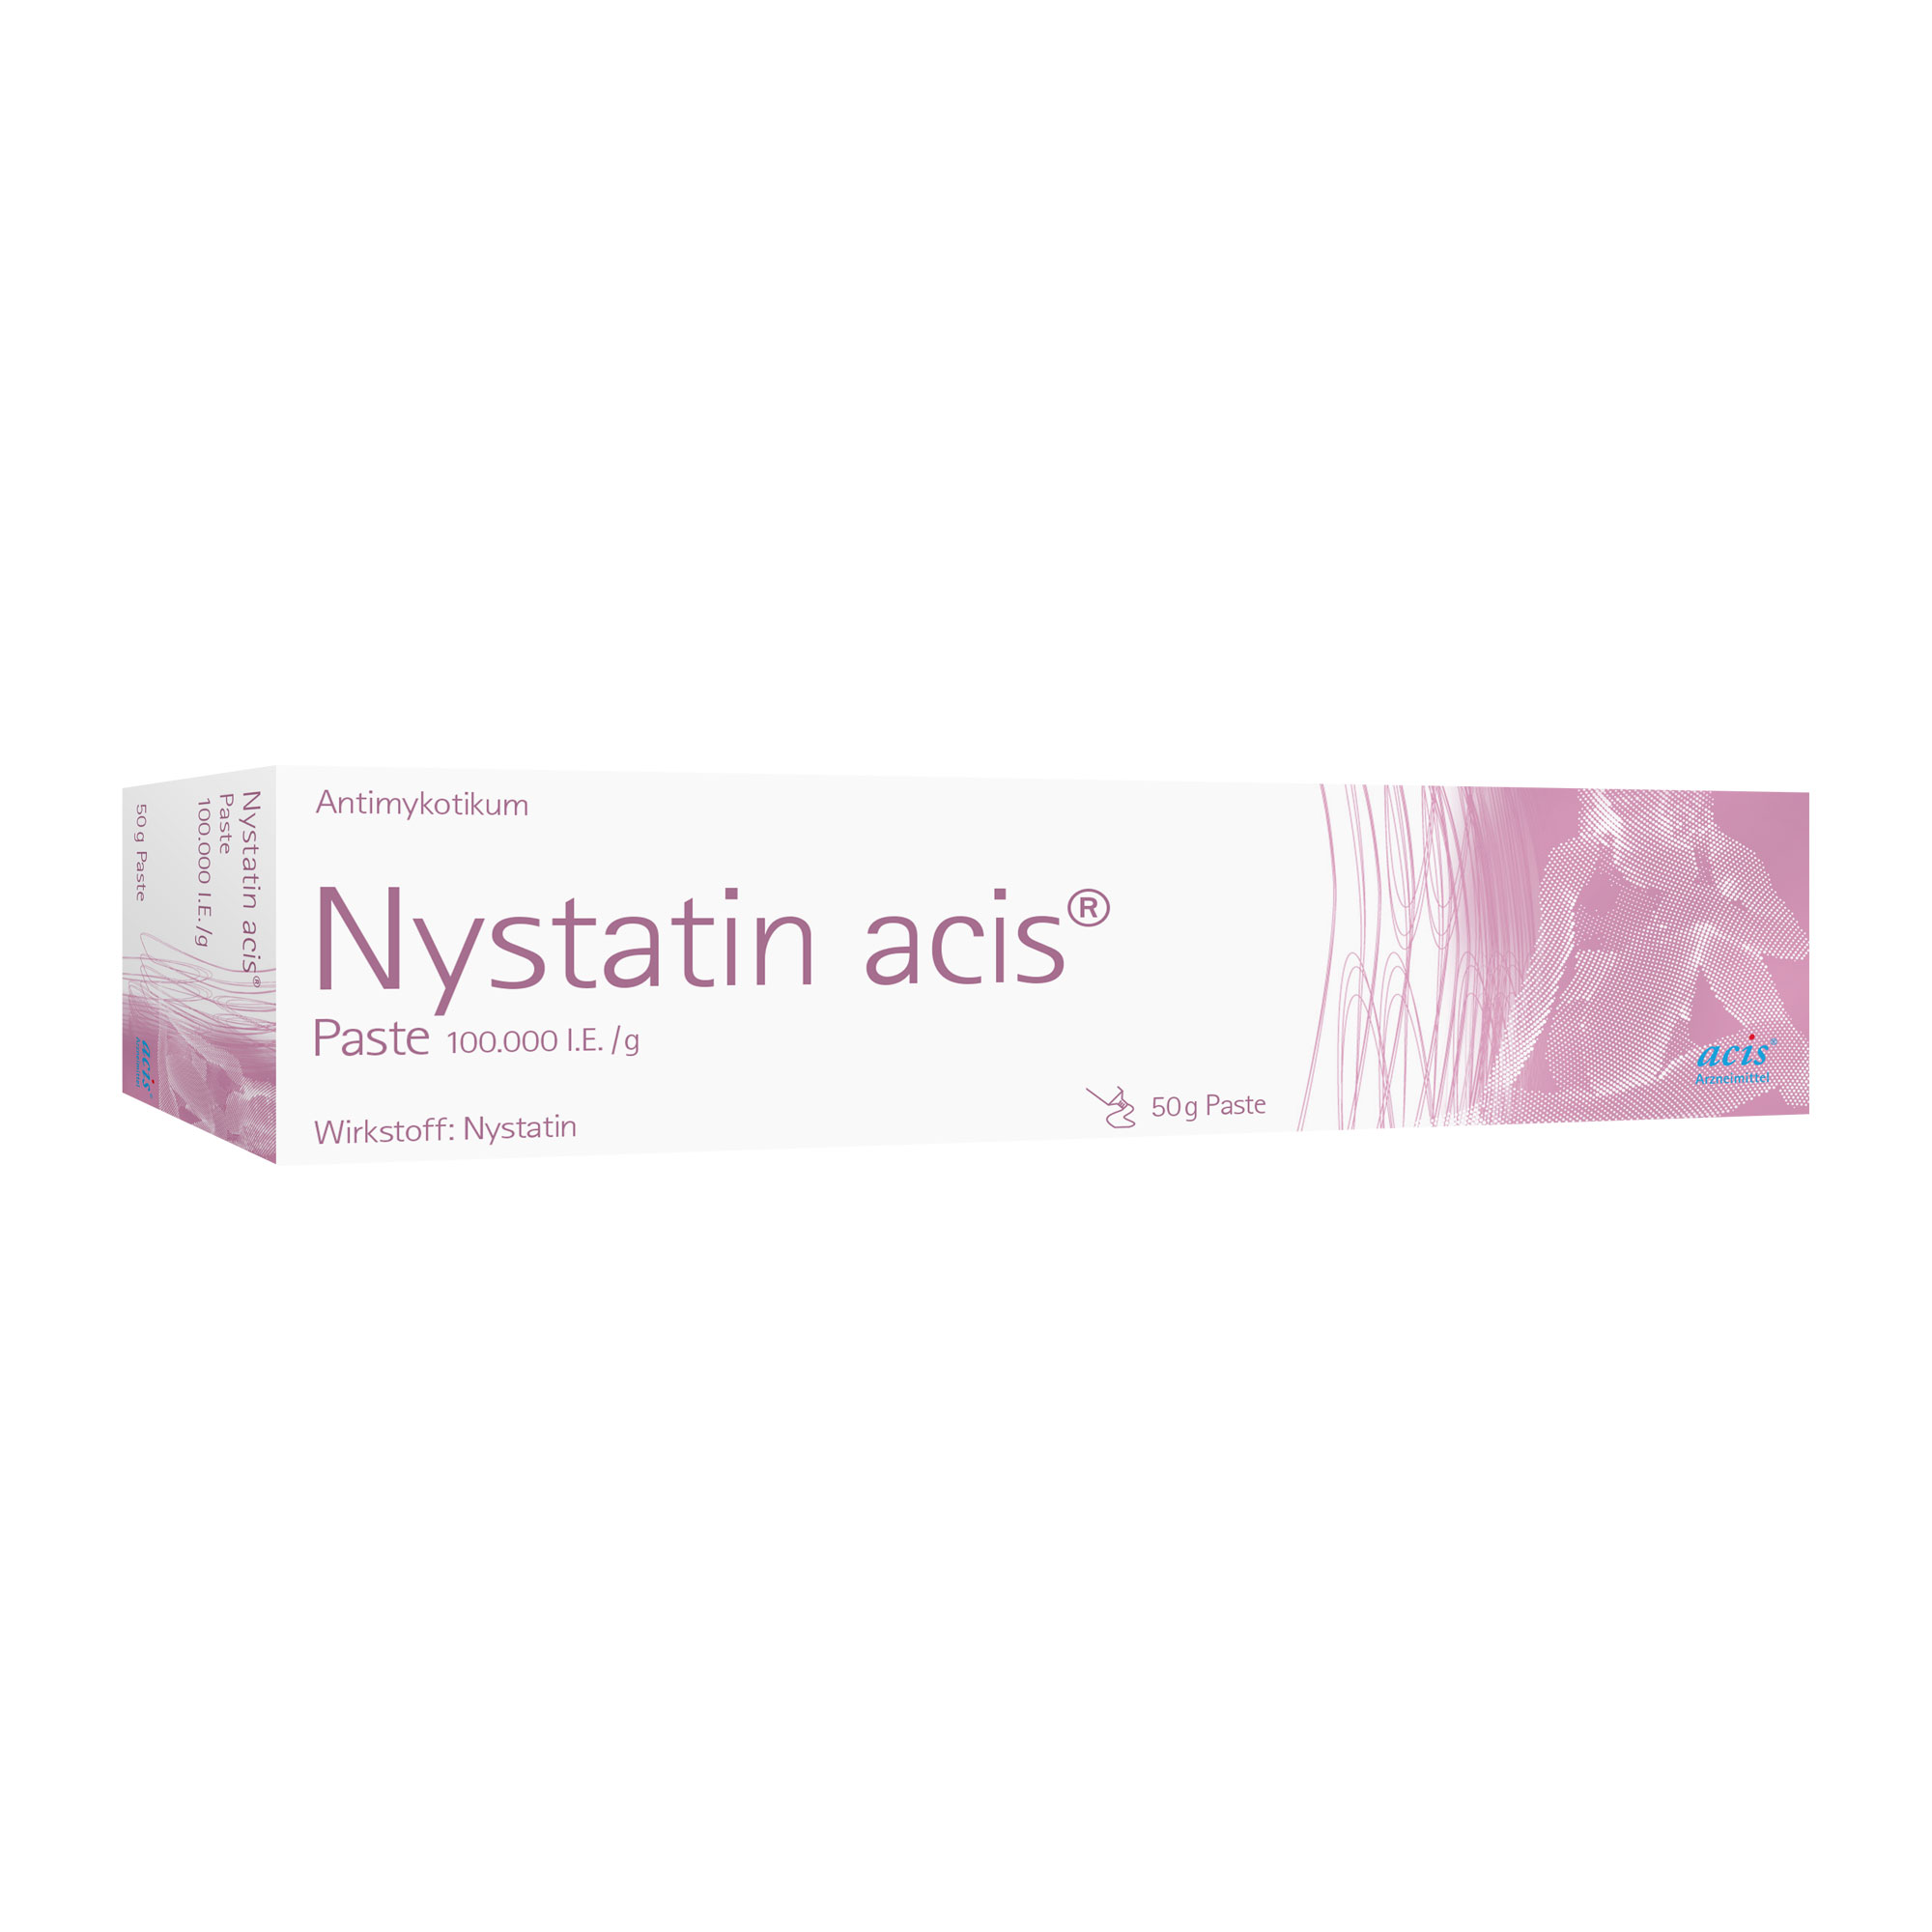 Bei Hautinfektionen mit Nystatin-empfindlichen Hefepilzen wie z. B. Windeldermatitis.